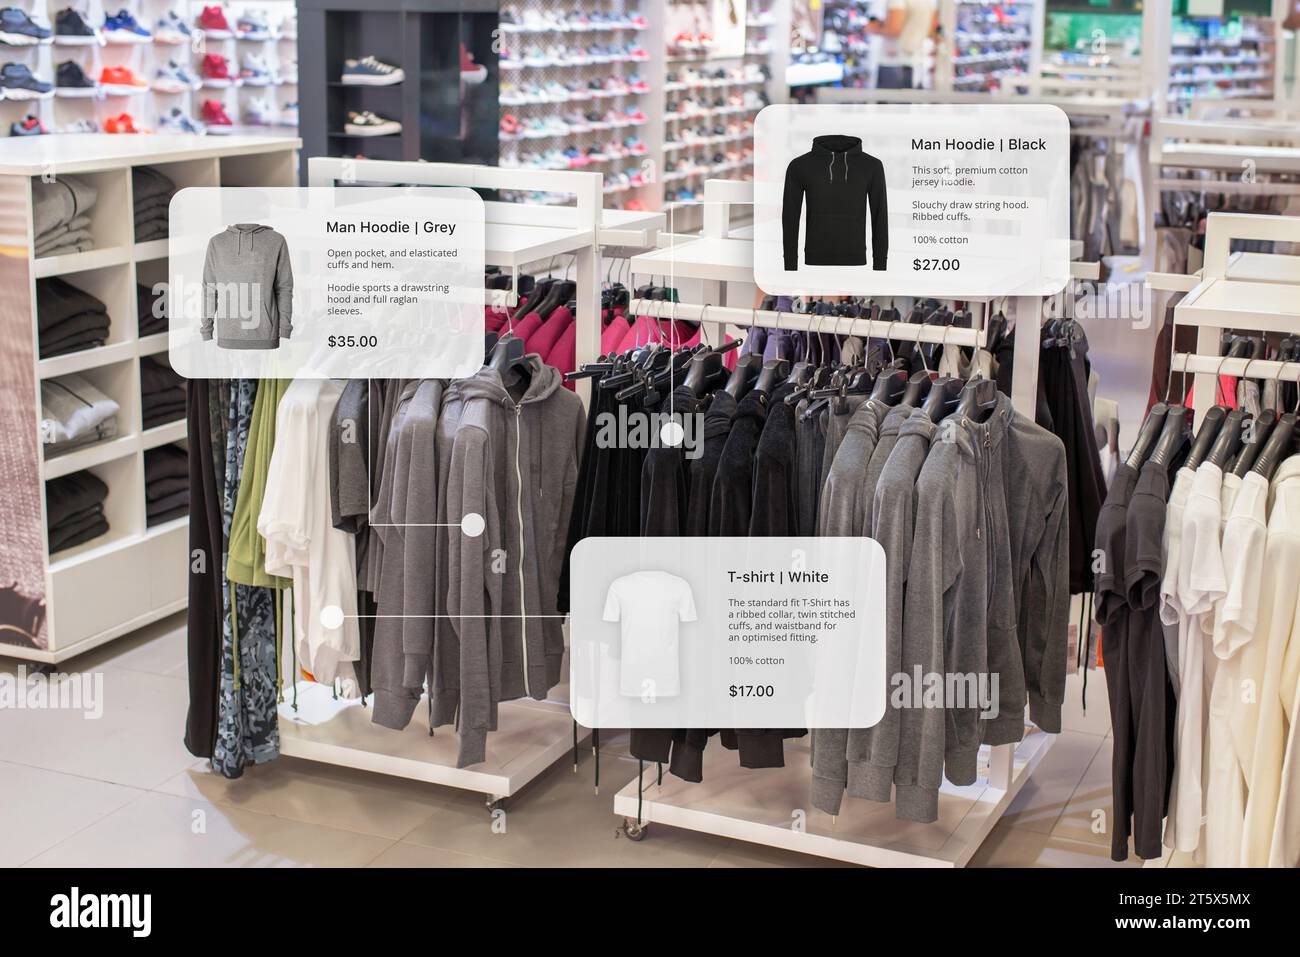 Innovazione nel negozio di abbigliamento con un sistema di shopping intelligente che mostra le caratteristiche e i prezzi dei capi Foto Stock